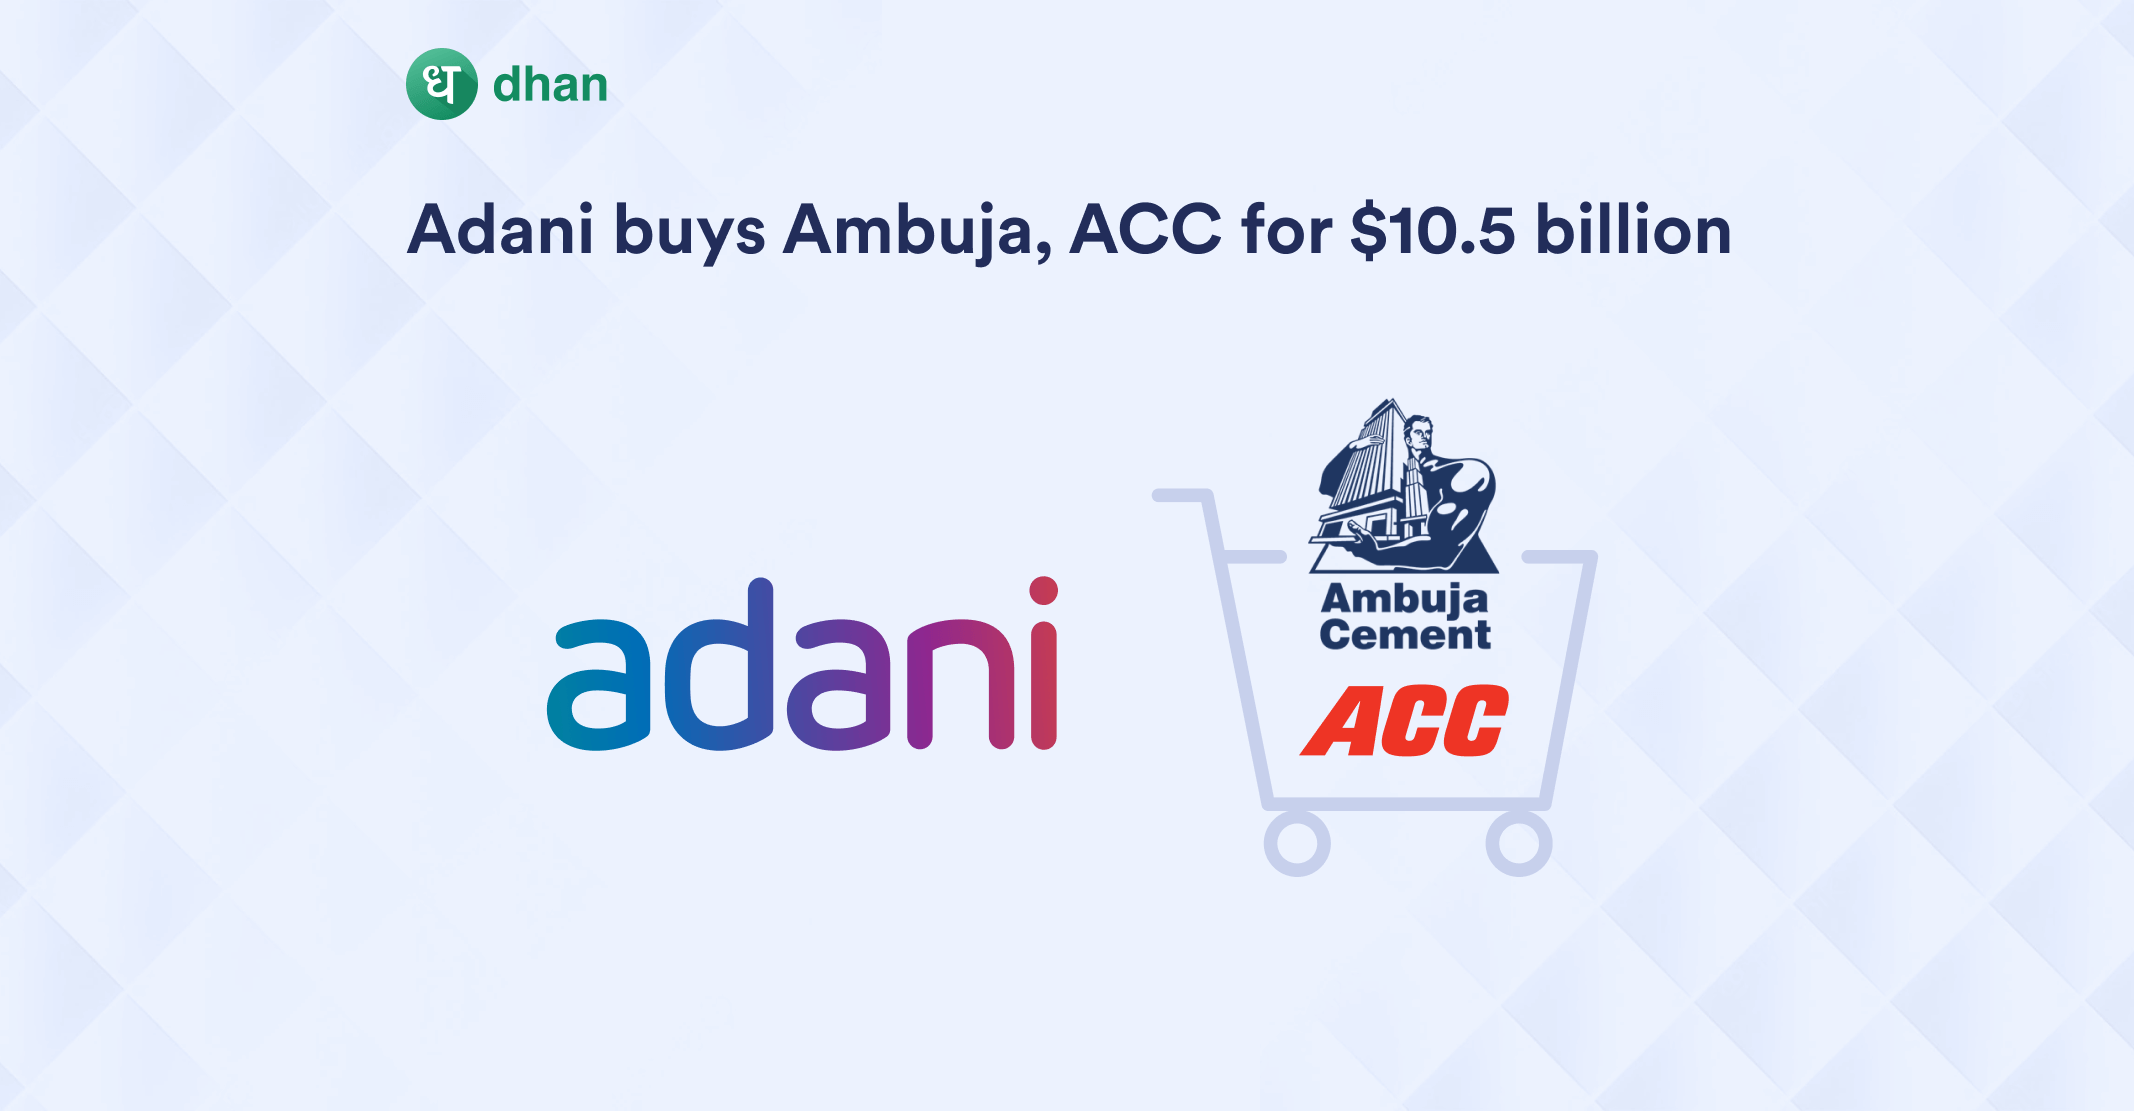 Adani Acquires Holcim Stake in ACC-Ambuja for $10.5 Billion